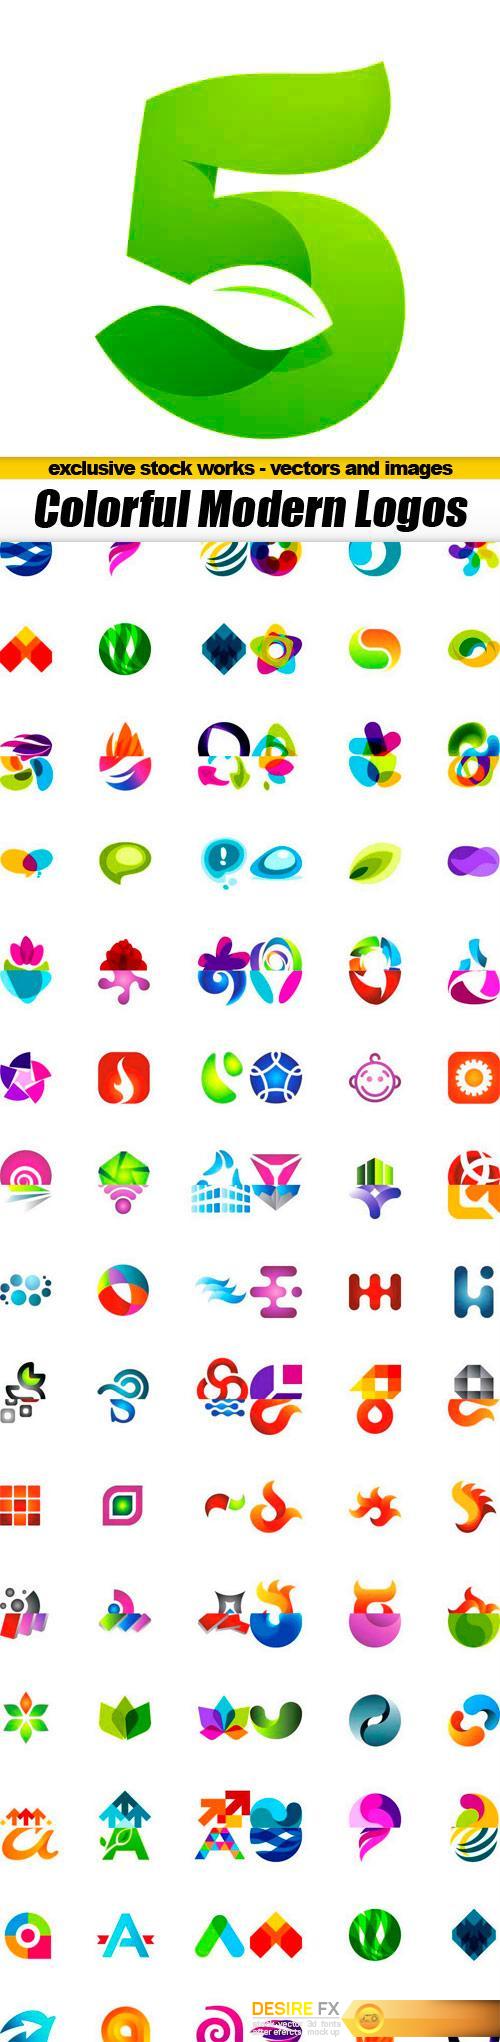 Modern Colorful Vector Logos Templates - 15x EPS